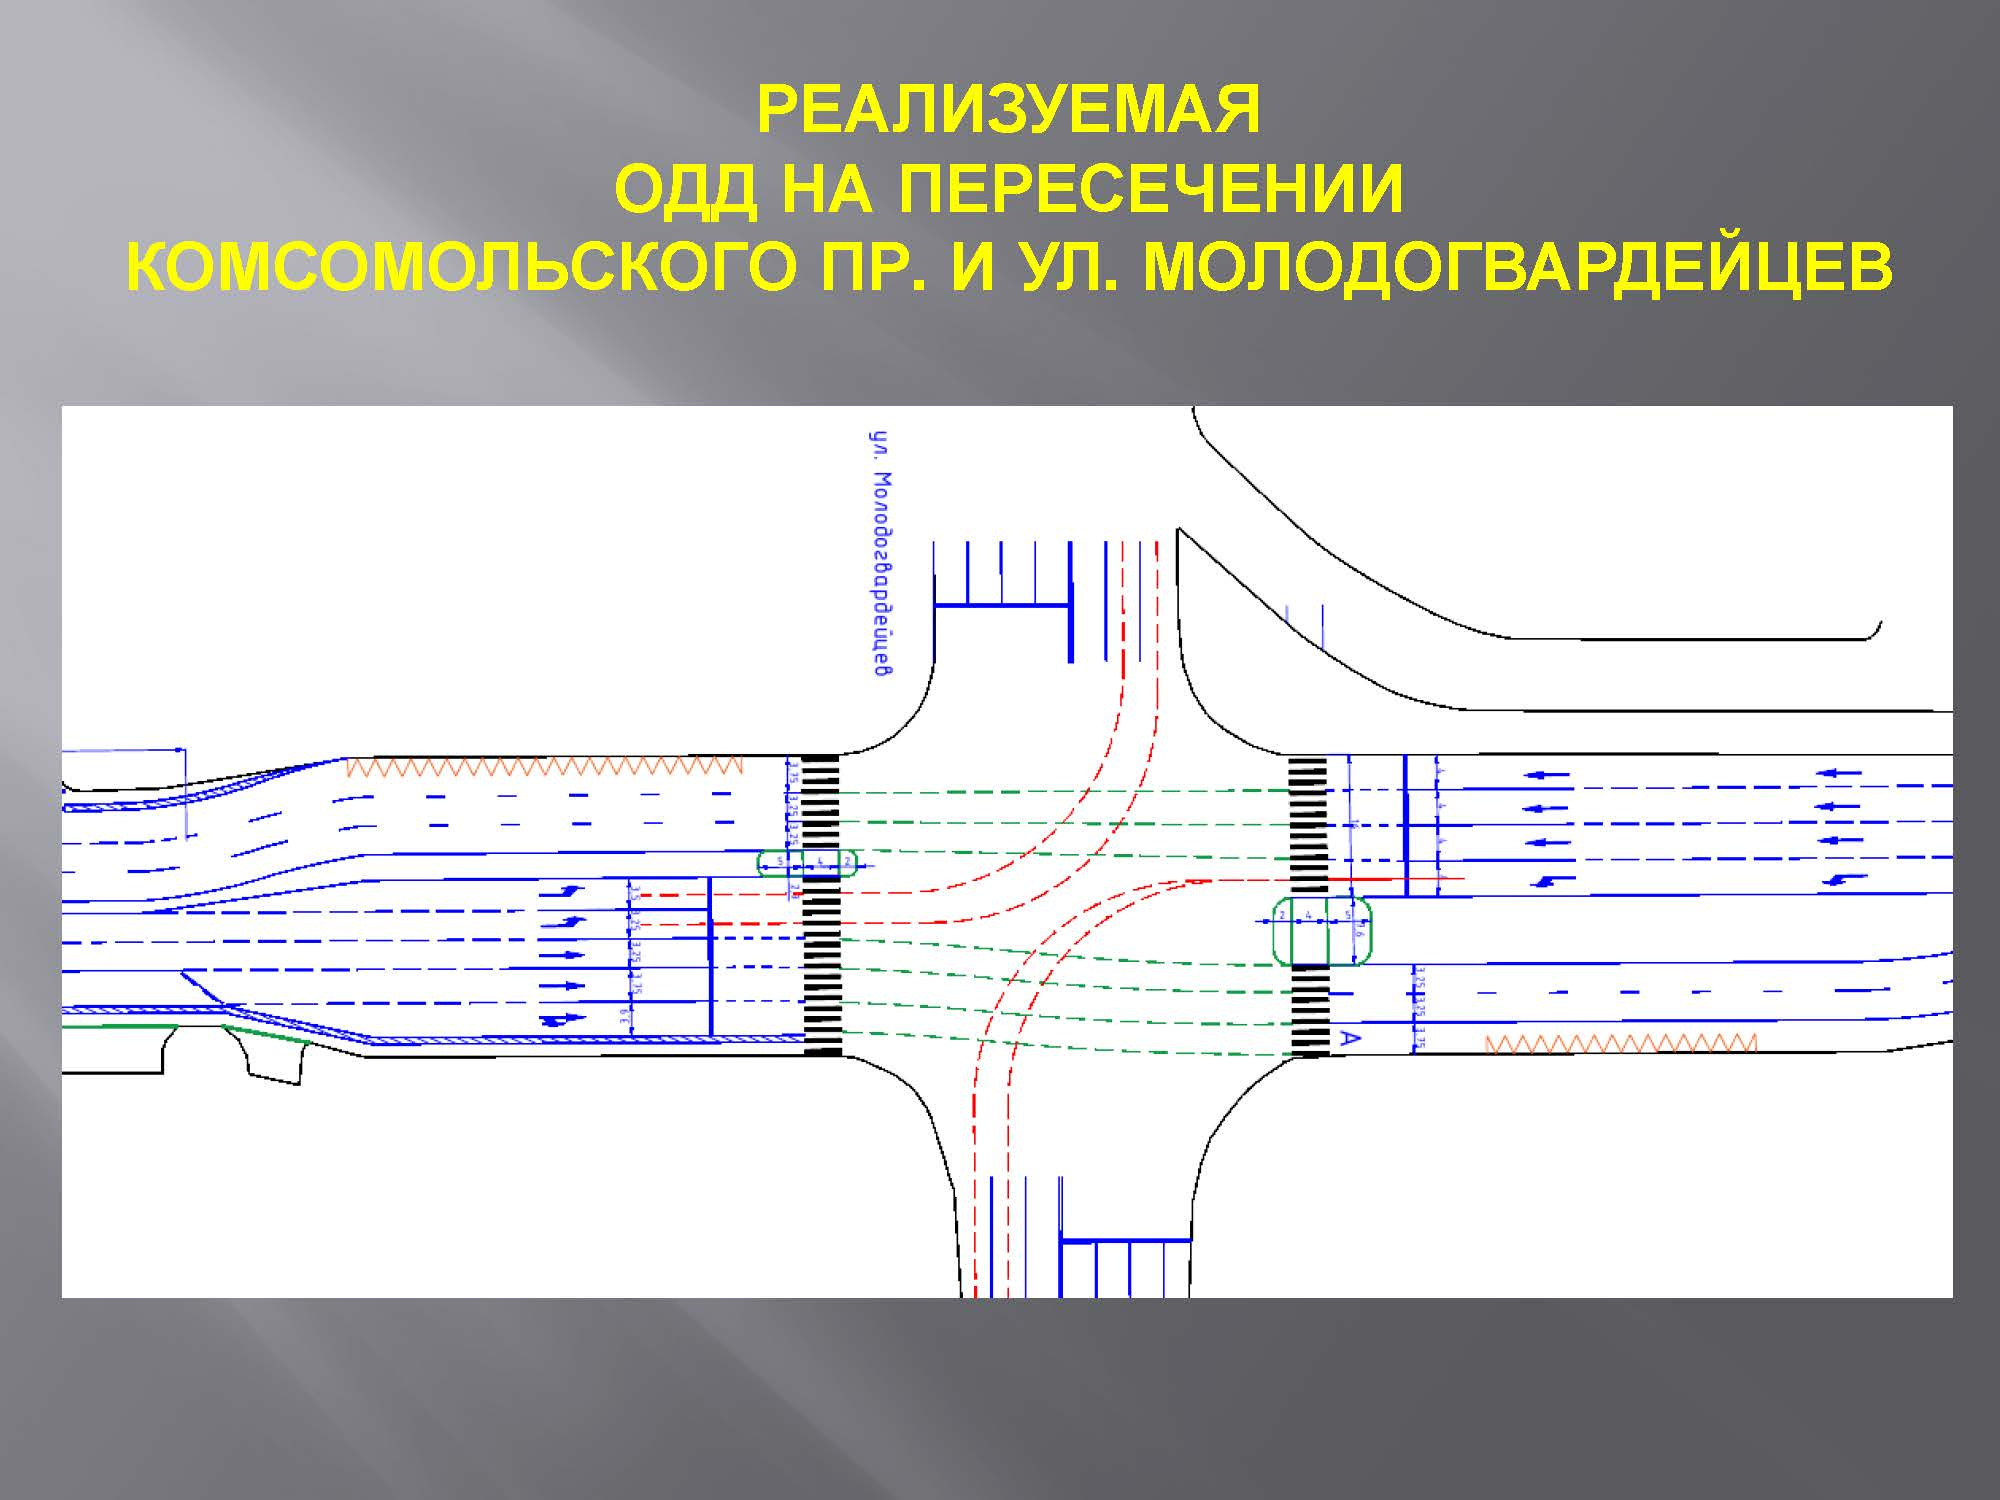 В мэрии уверяют, что количество полос на Комсомольском проспекте останется прежним, изменится только их ширина